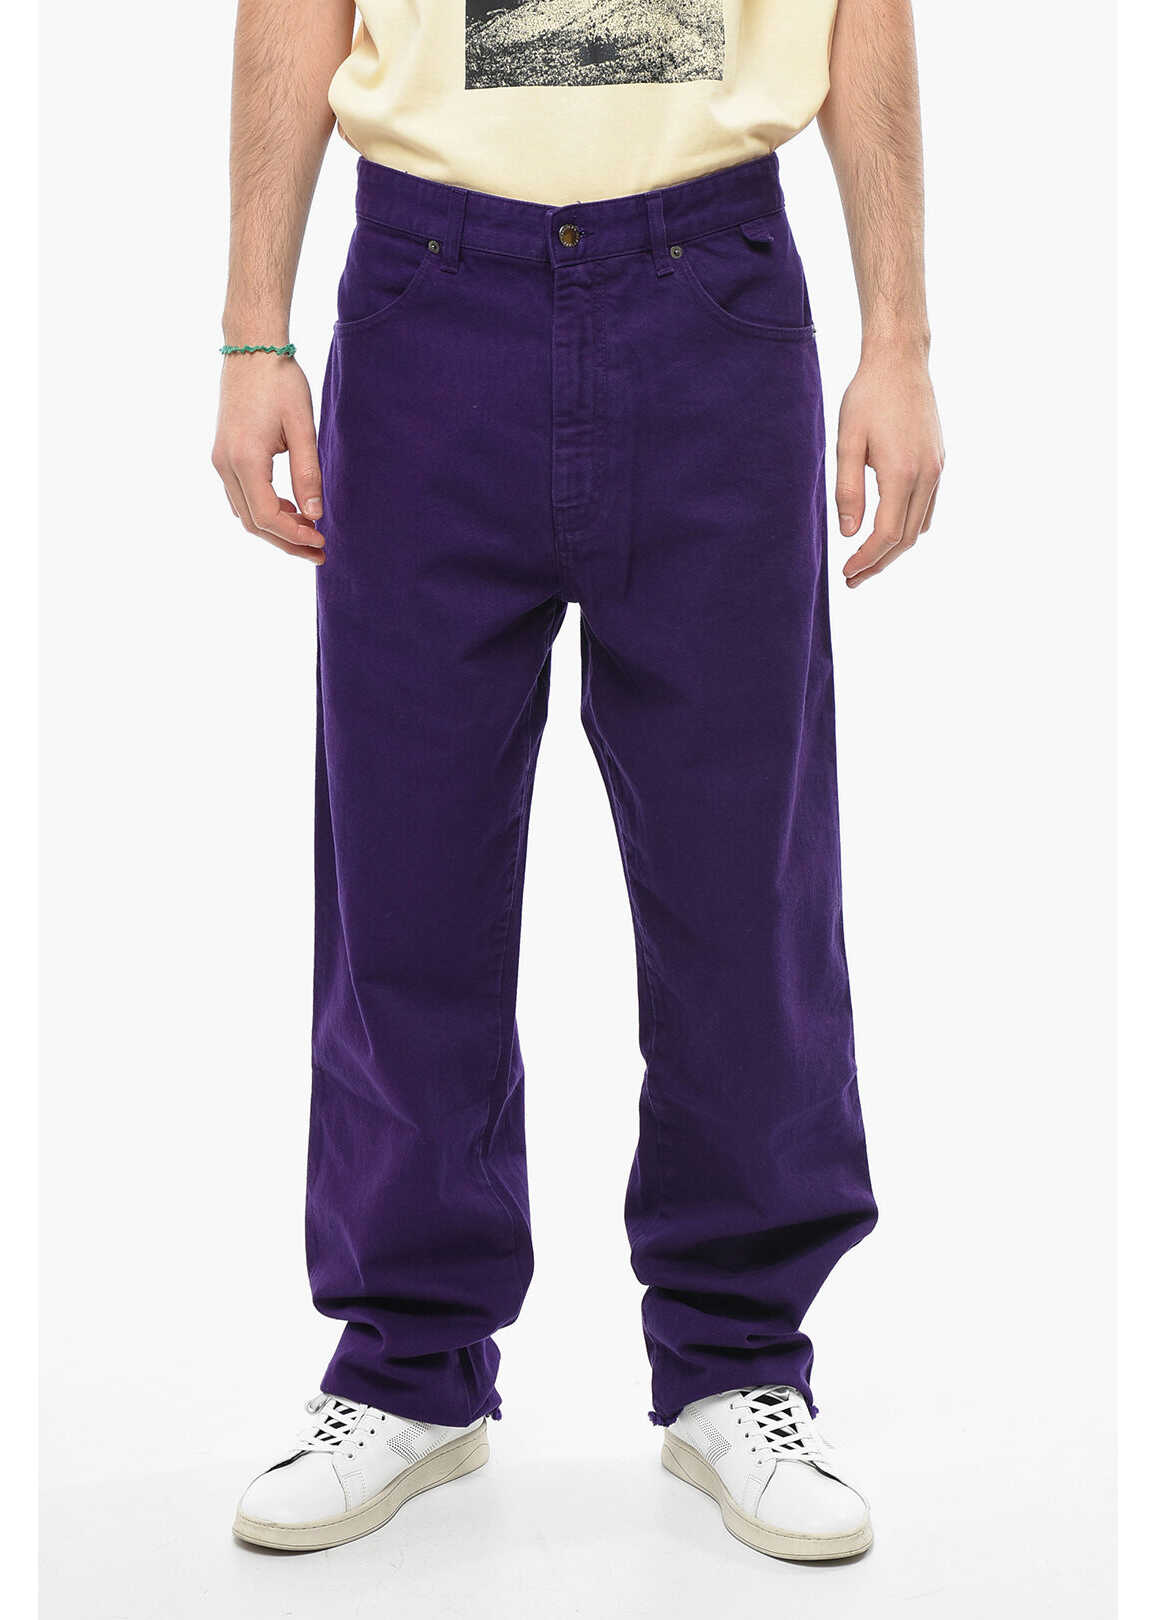 DARKPARK Solid Color John Jeans With Frayed Hem 23Cm Violet